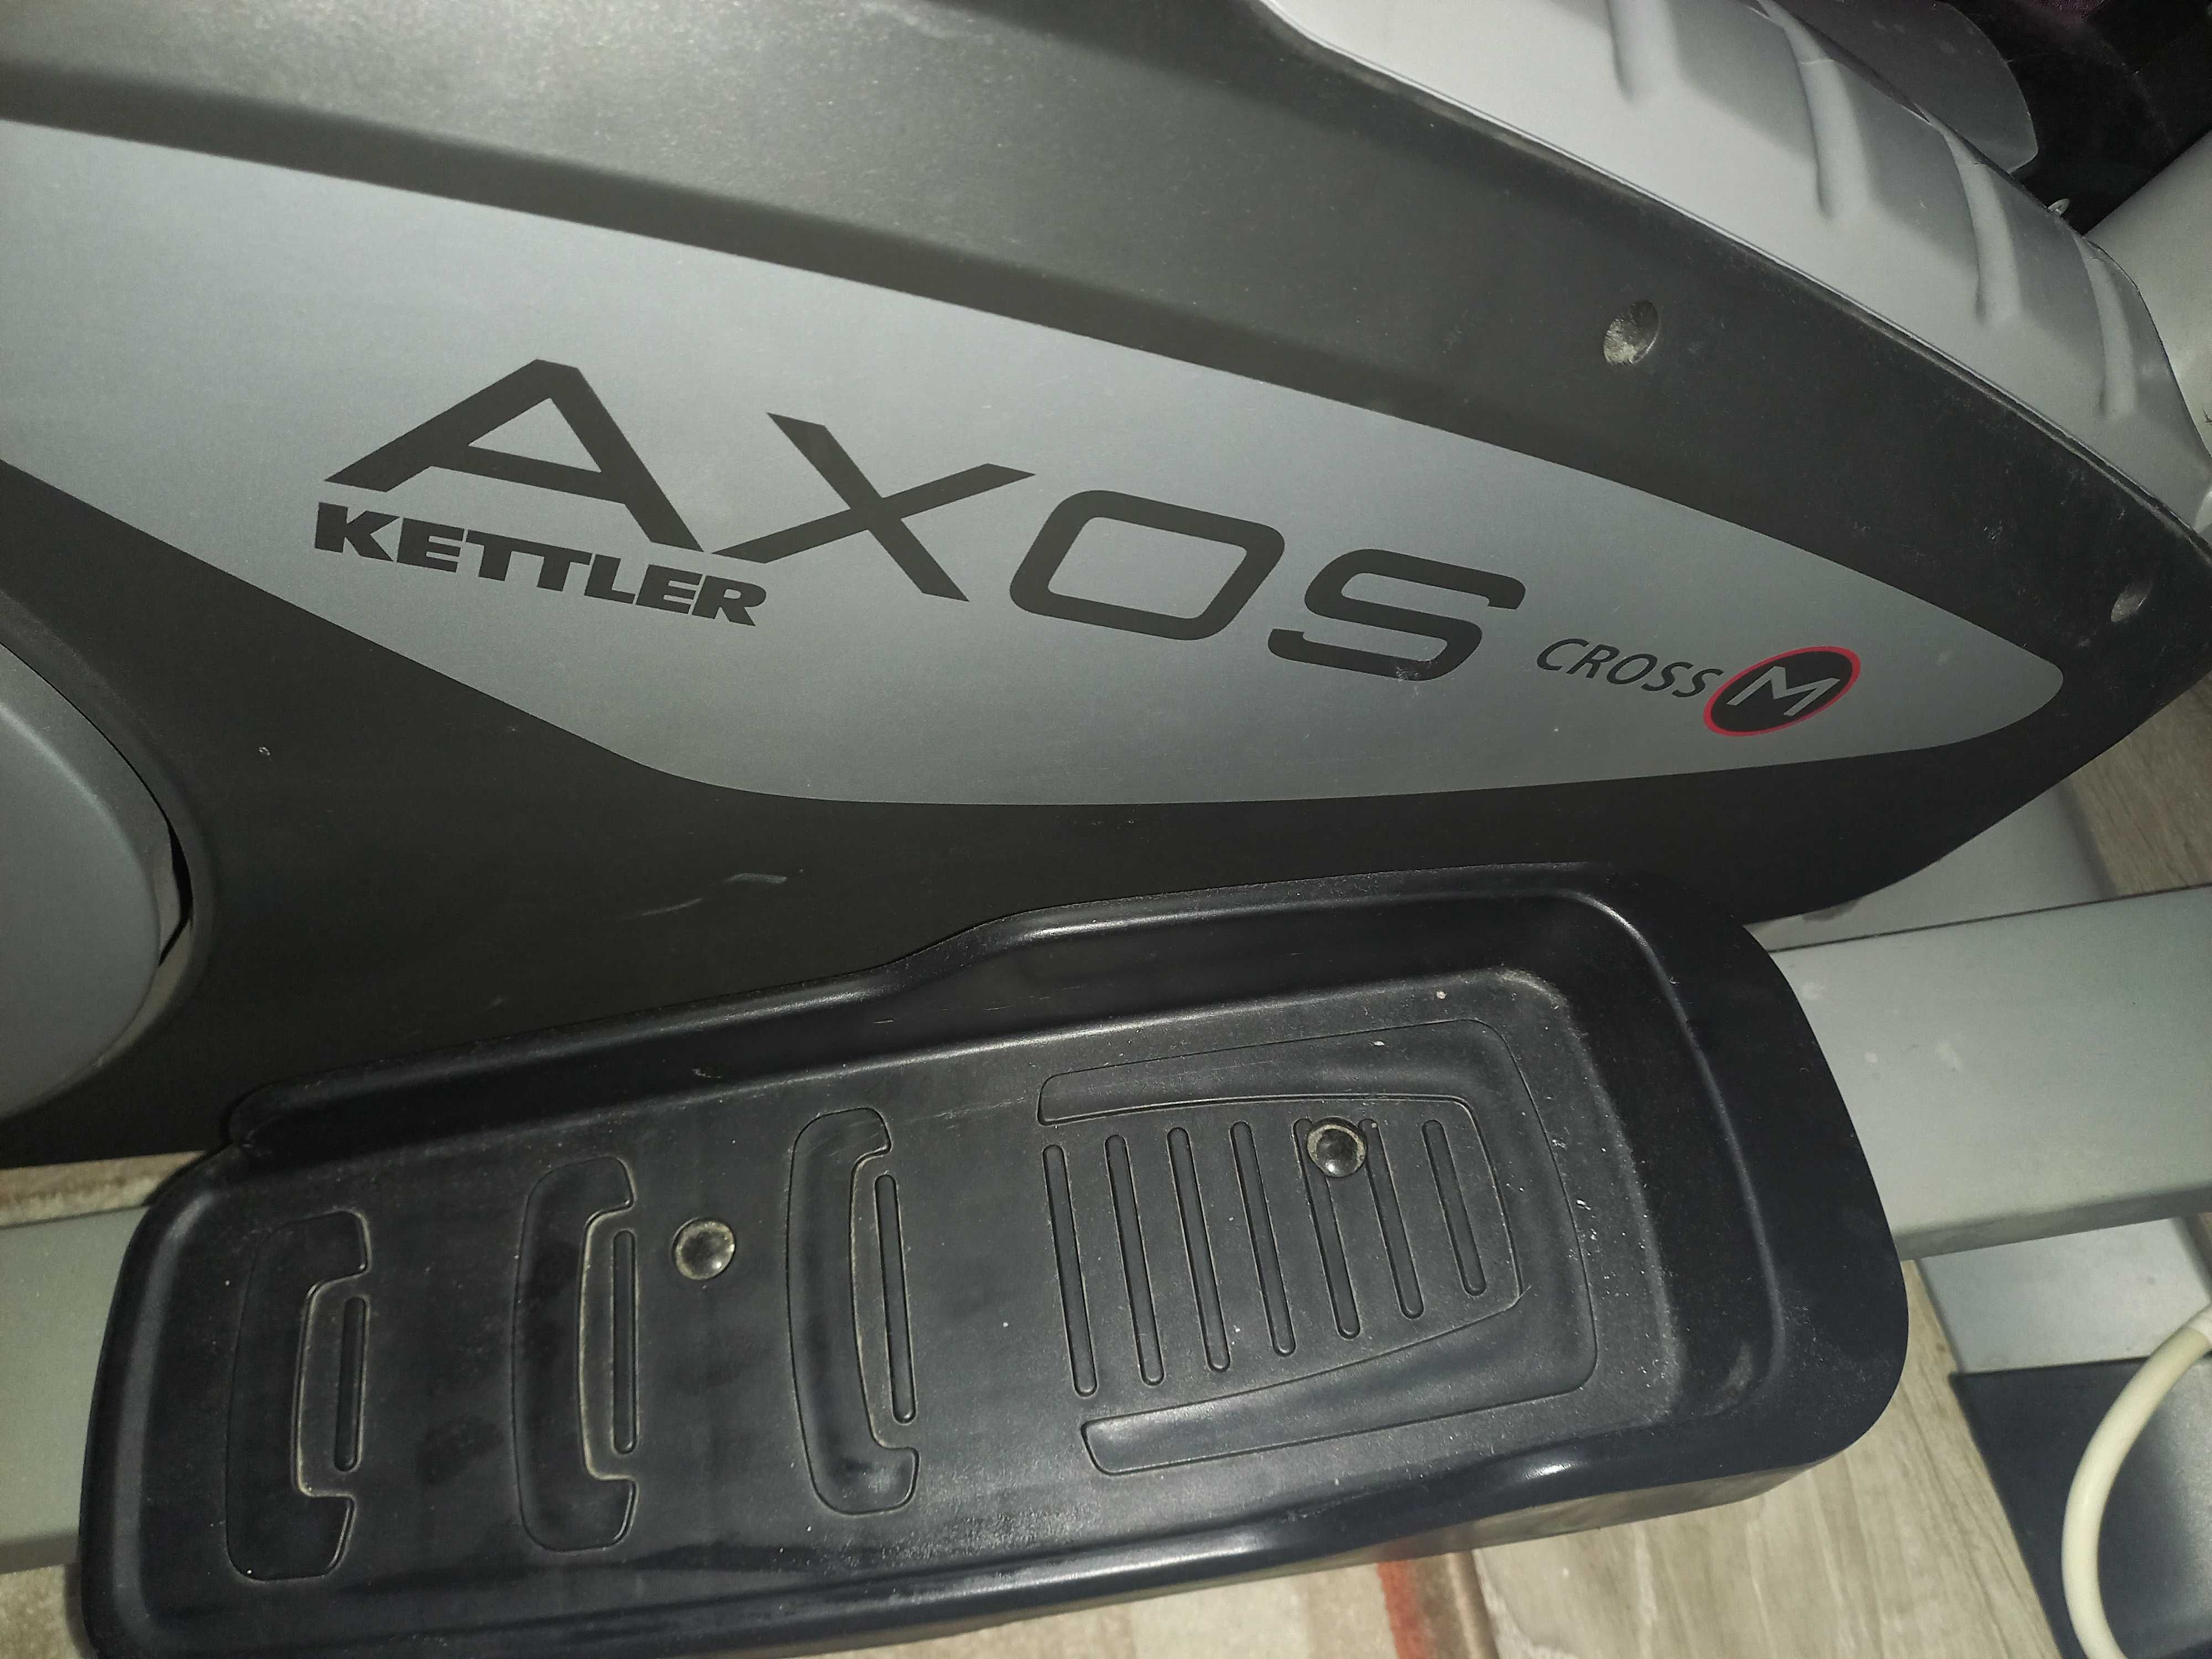 Bicicleta Kettler Axos Cross M